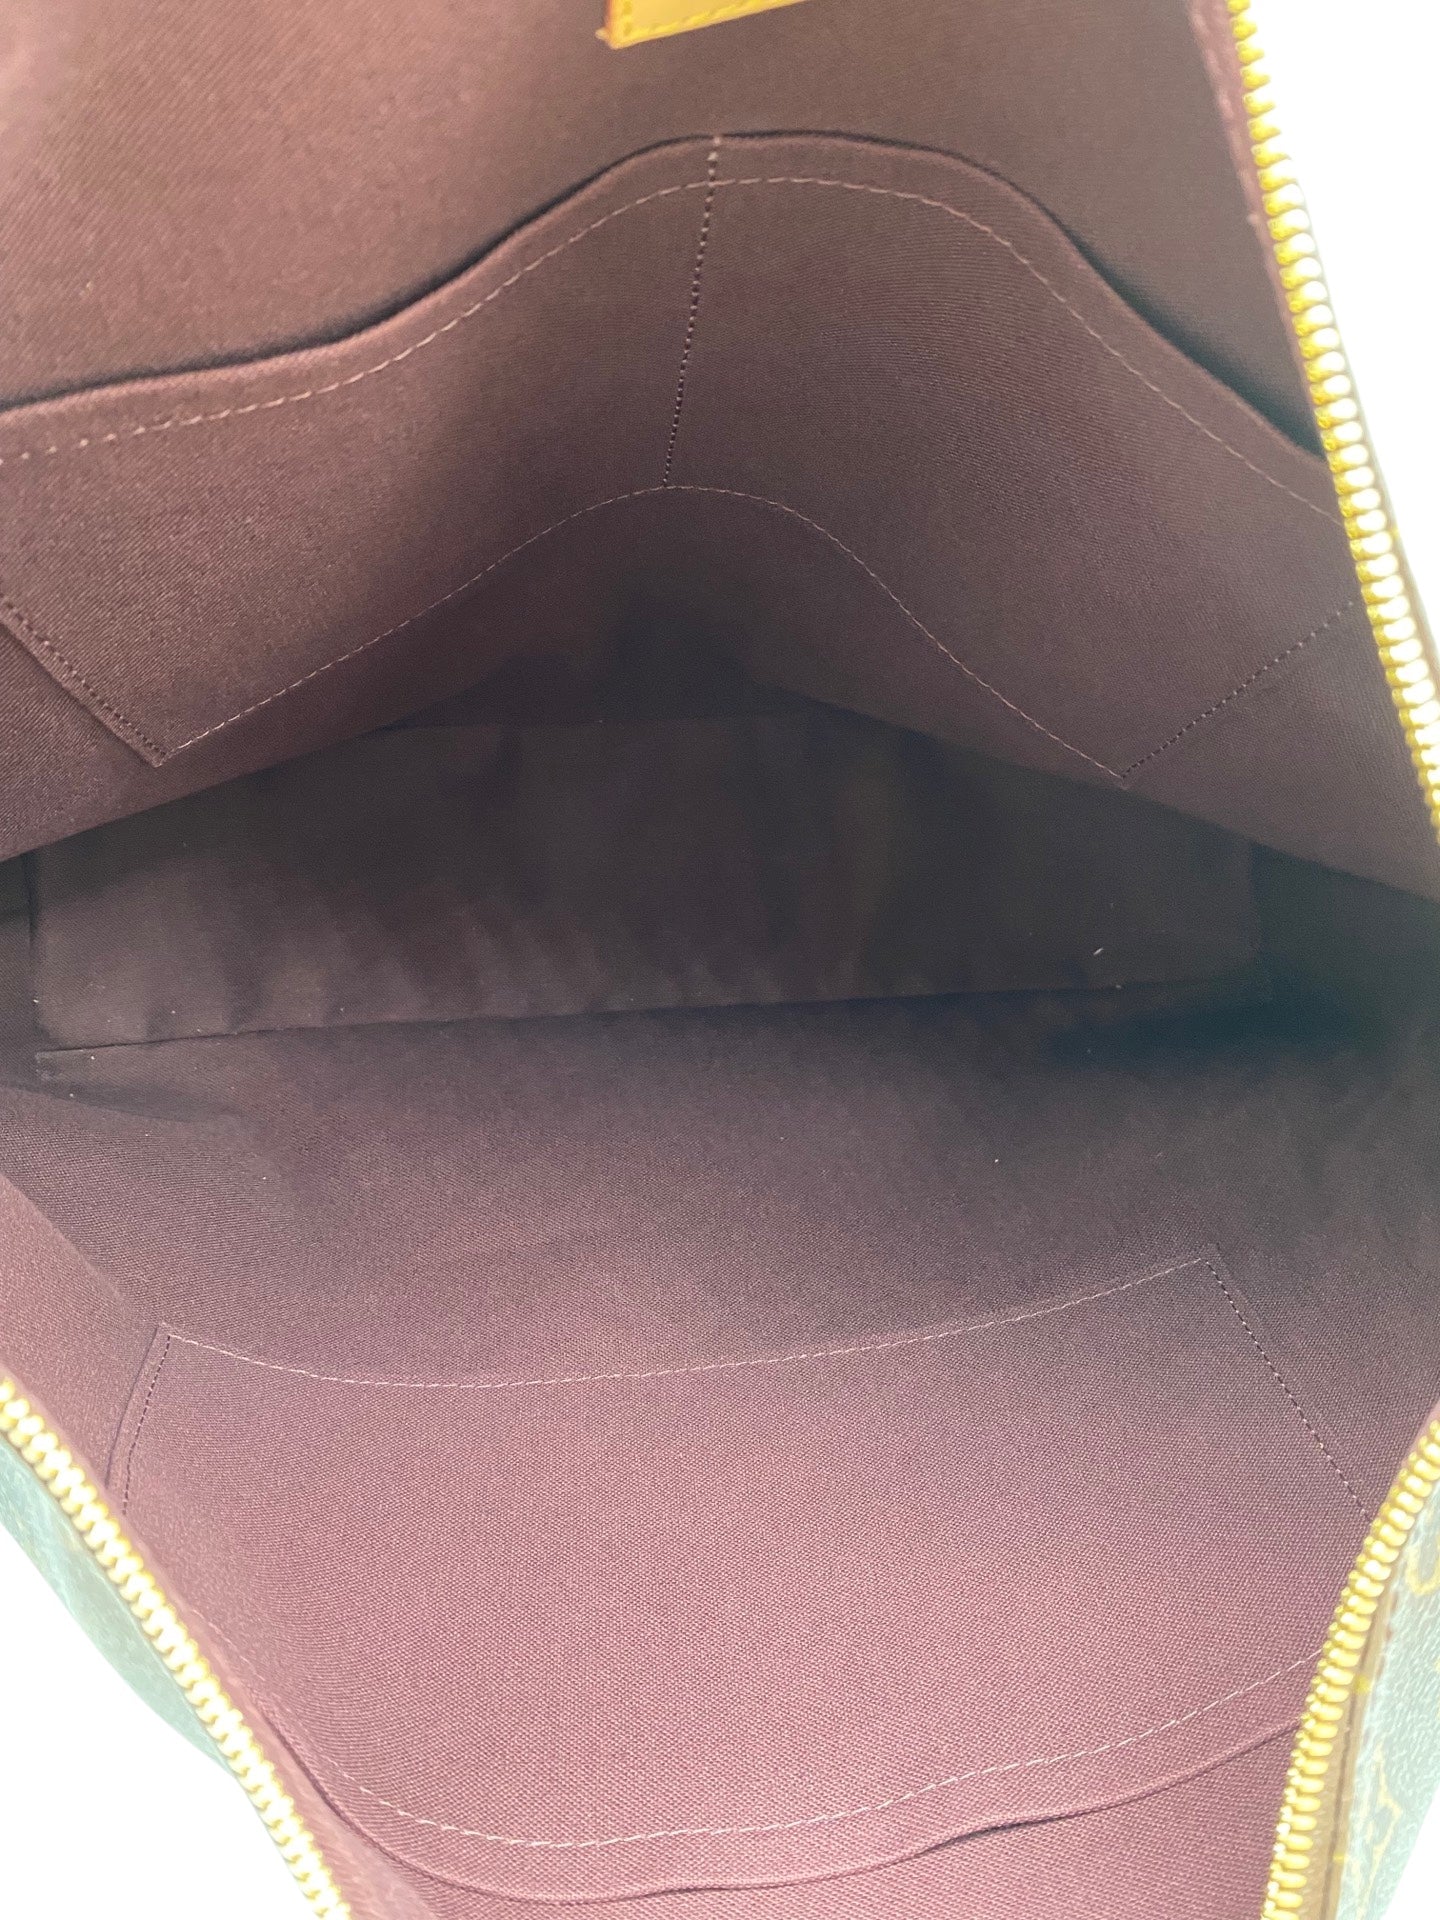 Louis Vuitton Berri PM Monogram Canvas Shoulder Bag